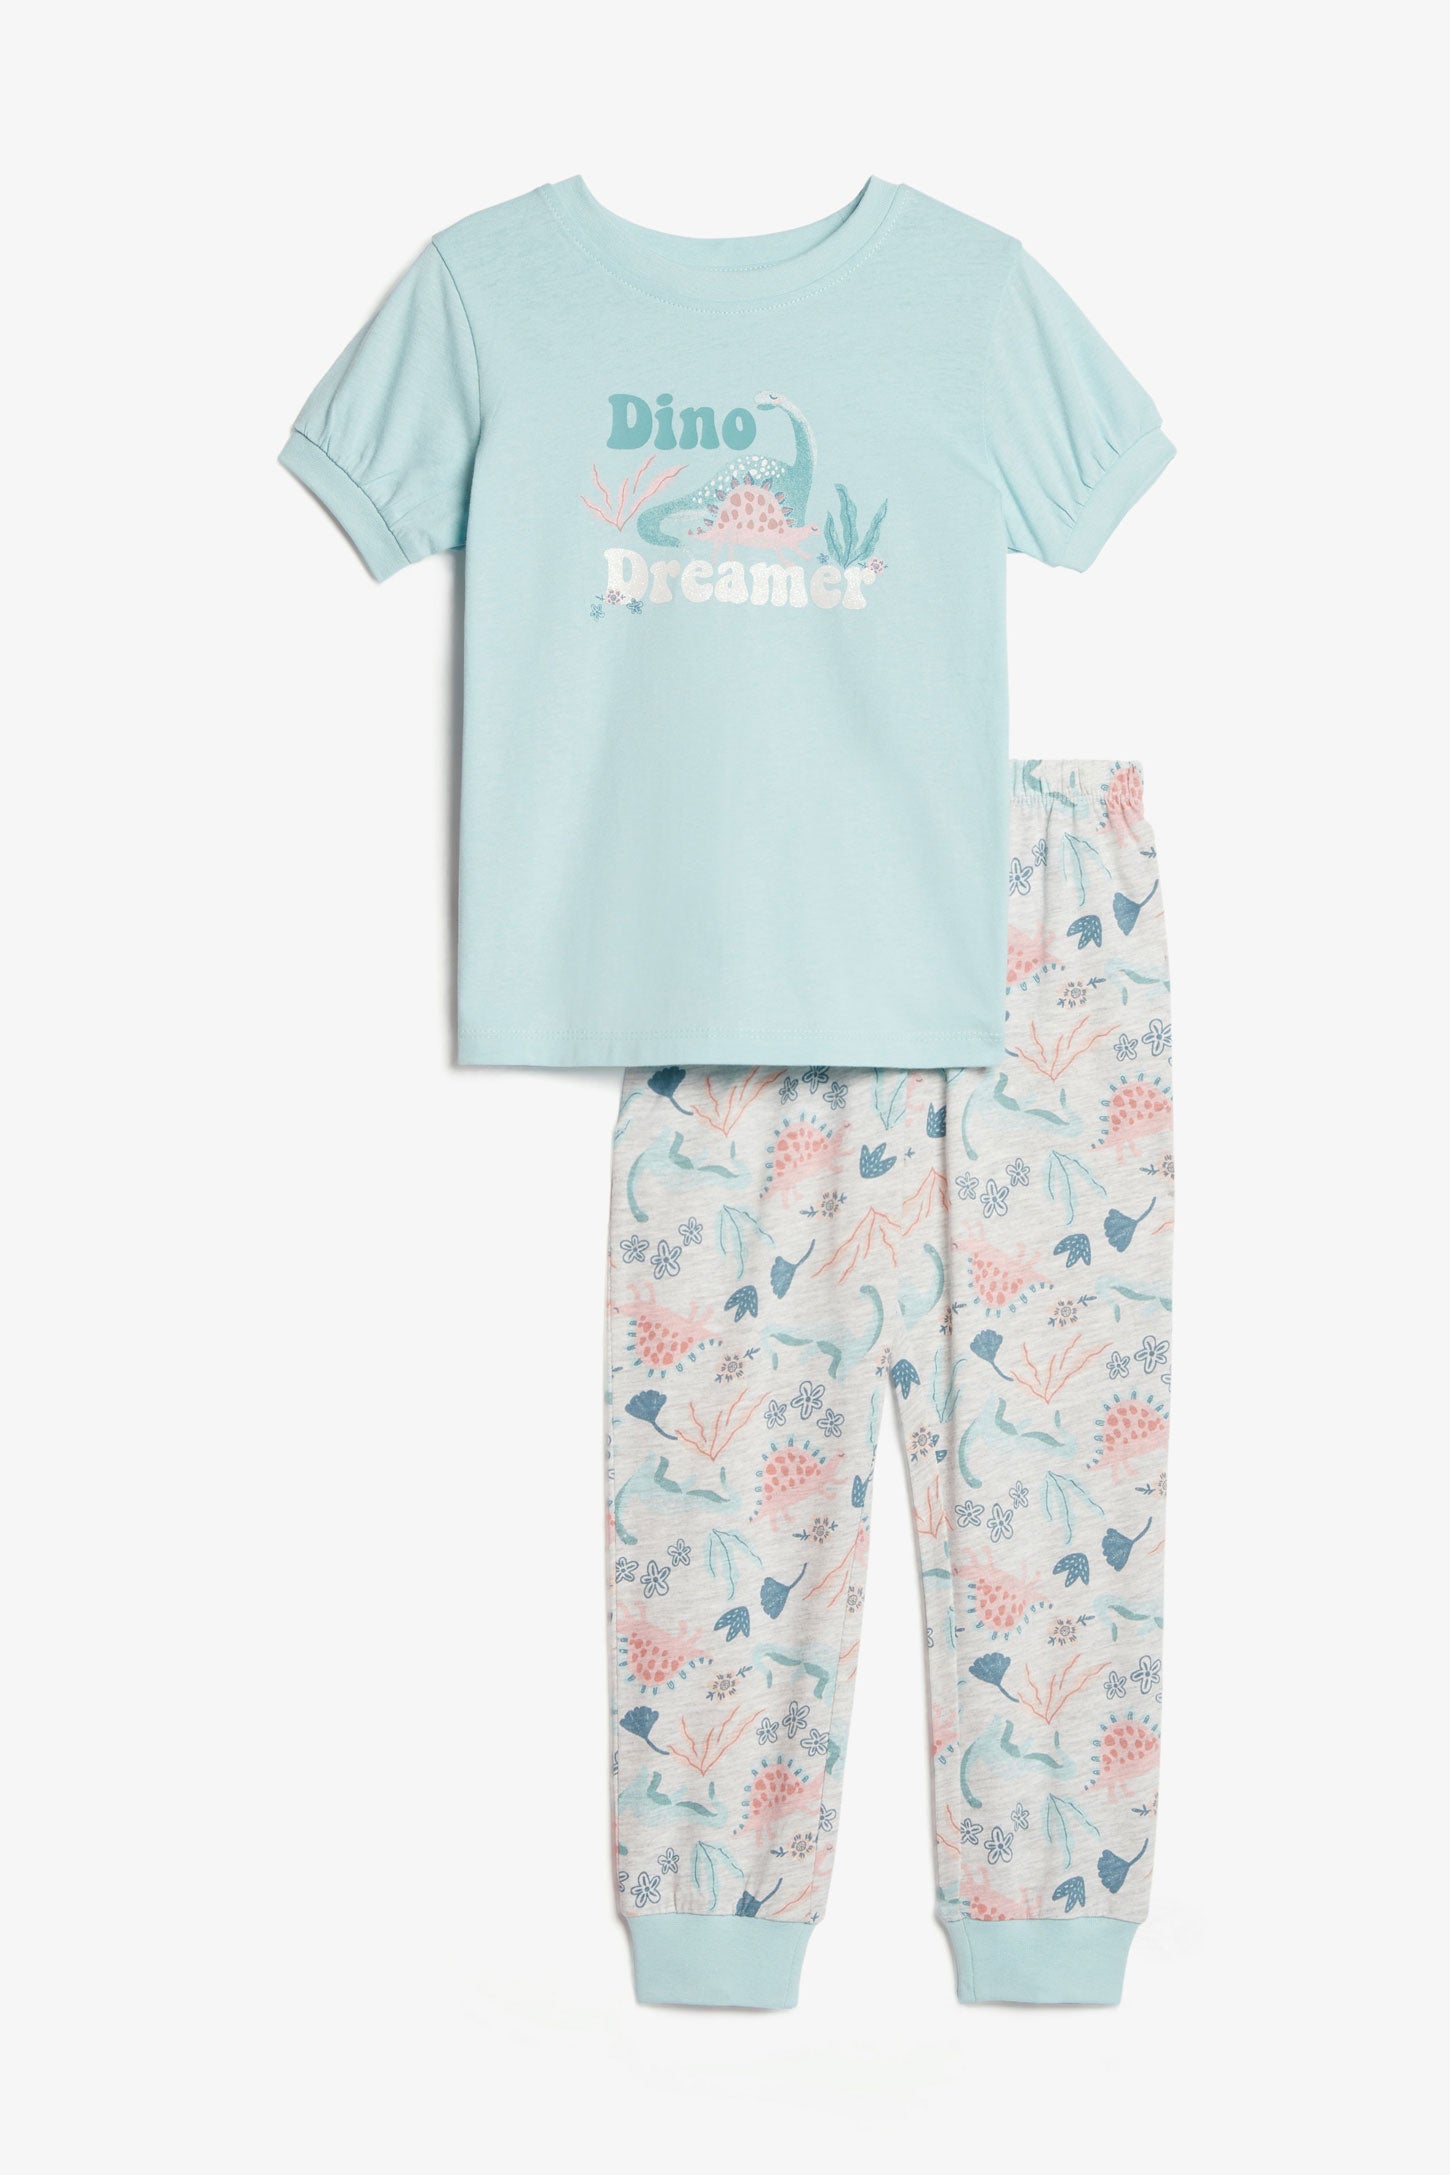 Pyjama 2-pièces en coton, 2/35$ - Enfant fille && BLEU PALE